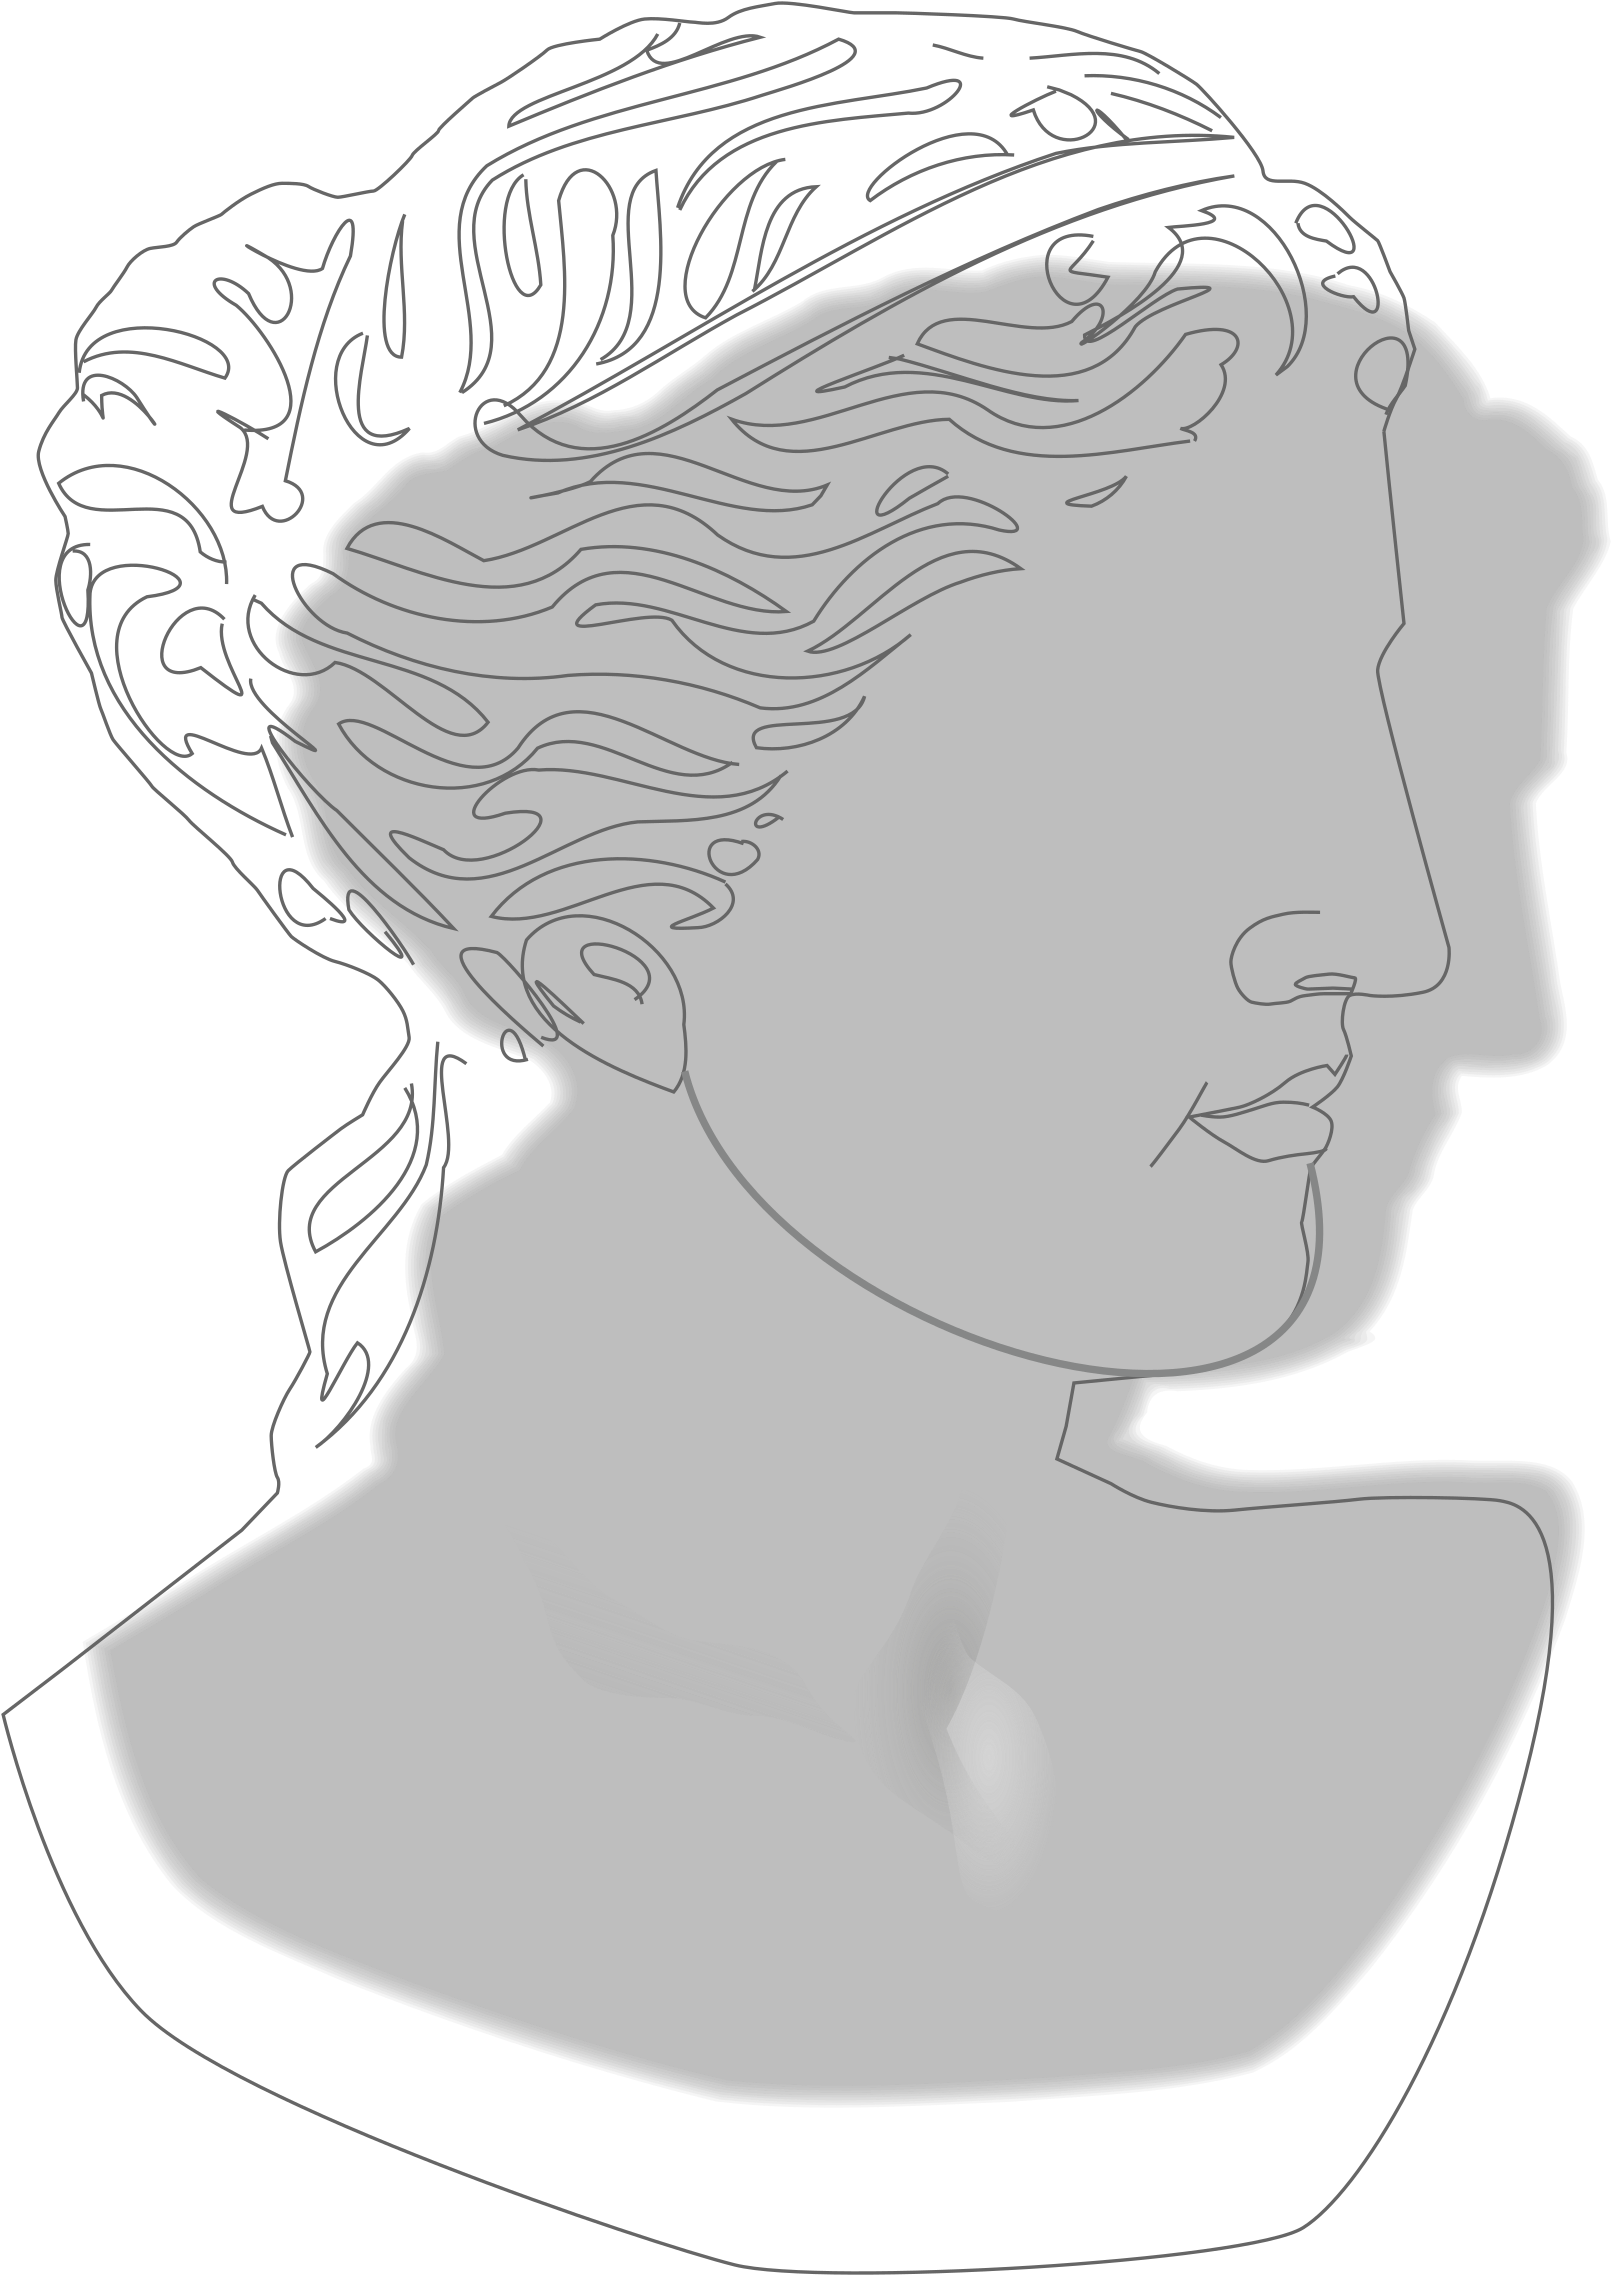 This Free Icons Png Design Of Venus De Milo Portrait Sketch Clipart Large Size Png Image Pikpng